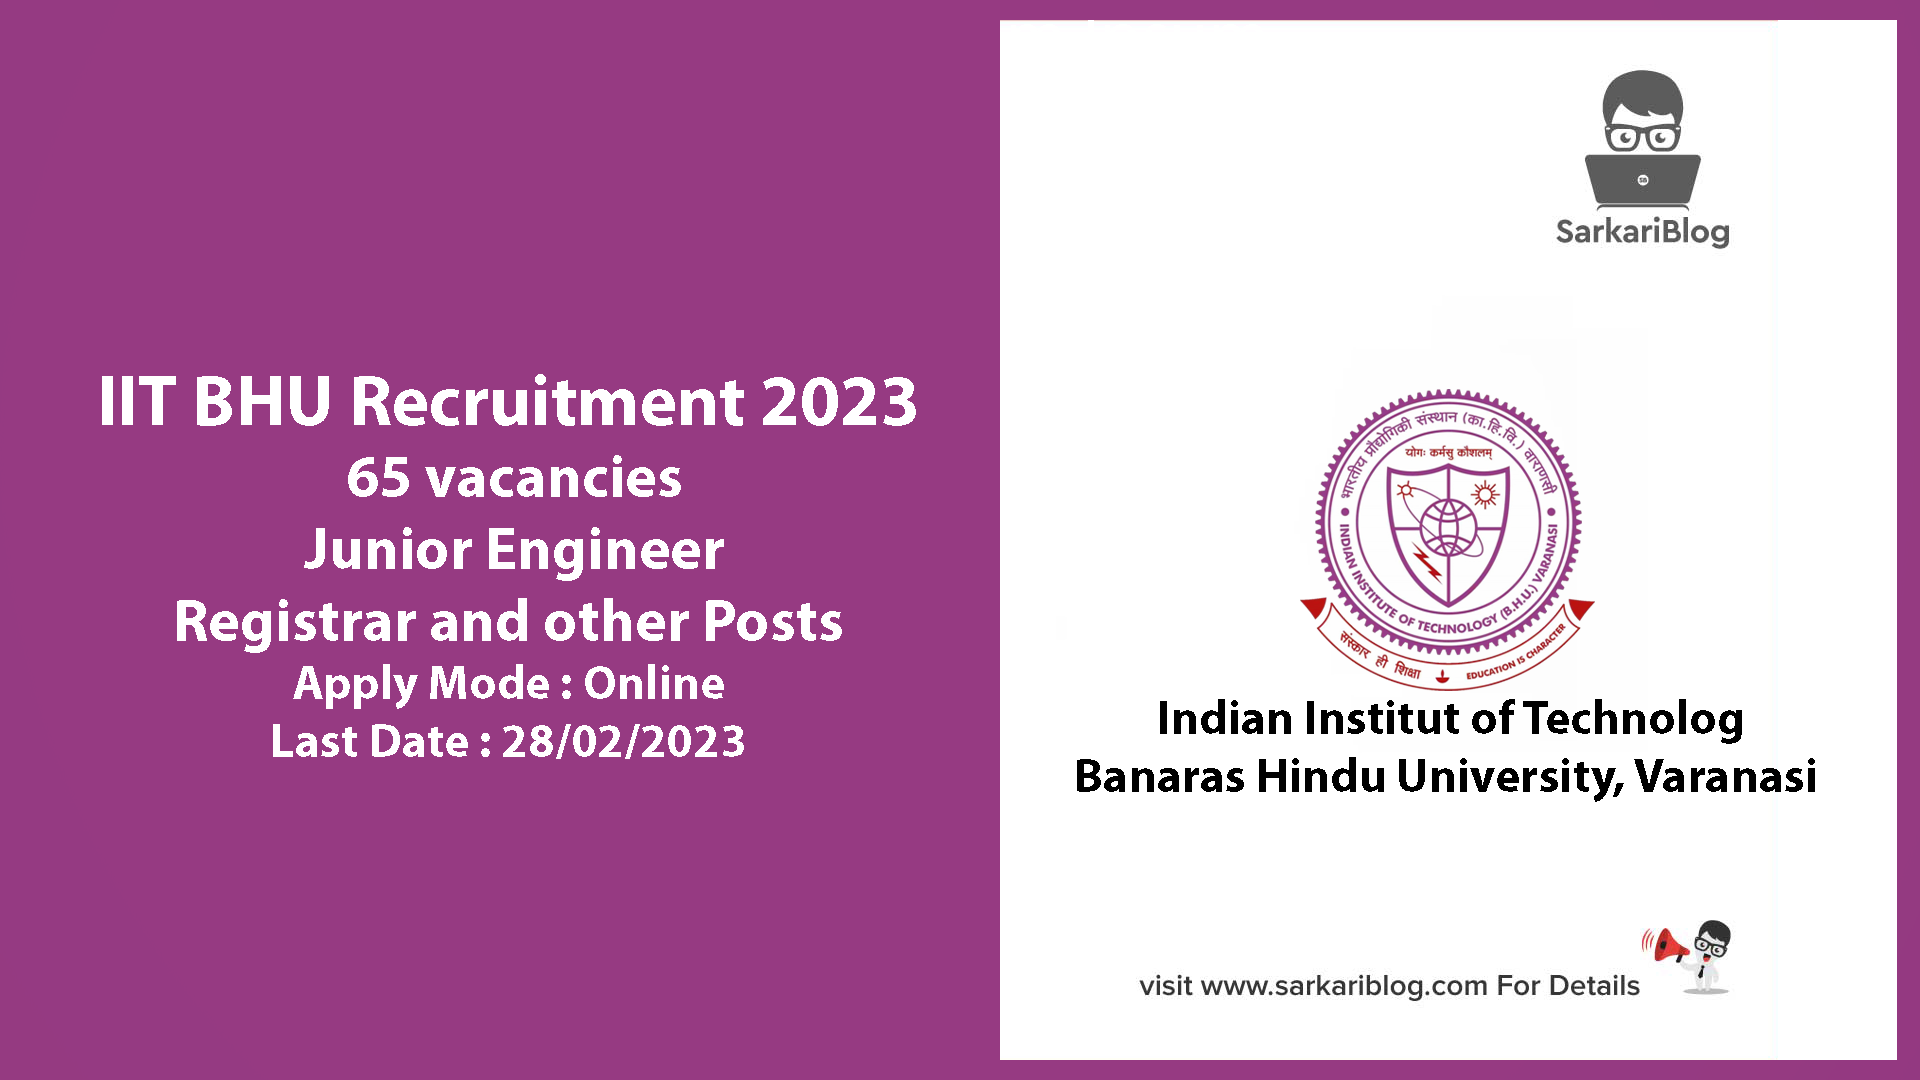 IIT BHU Recruitment 2023